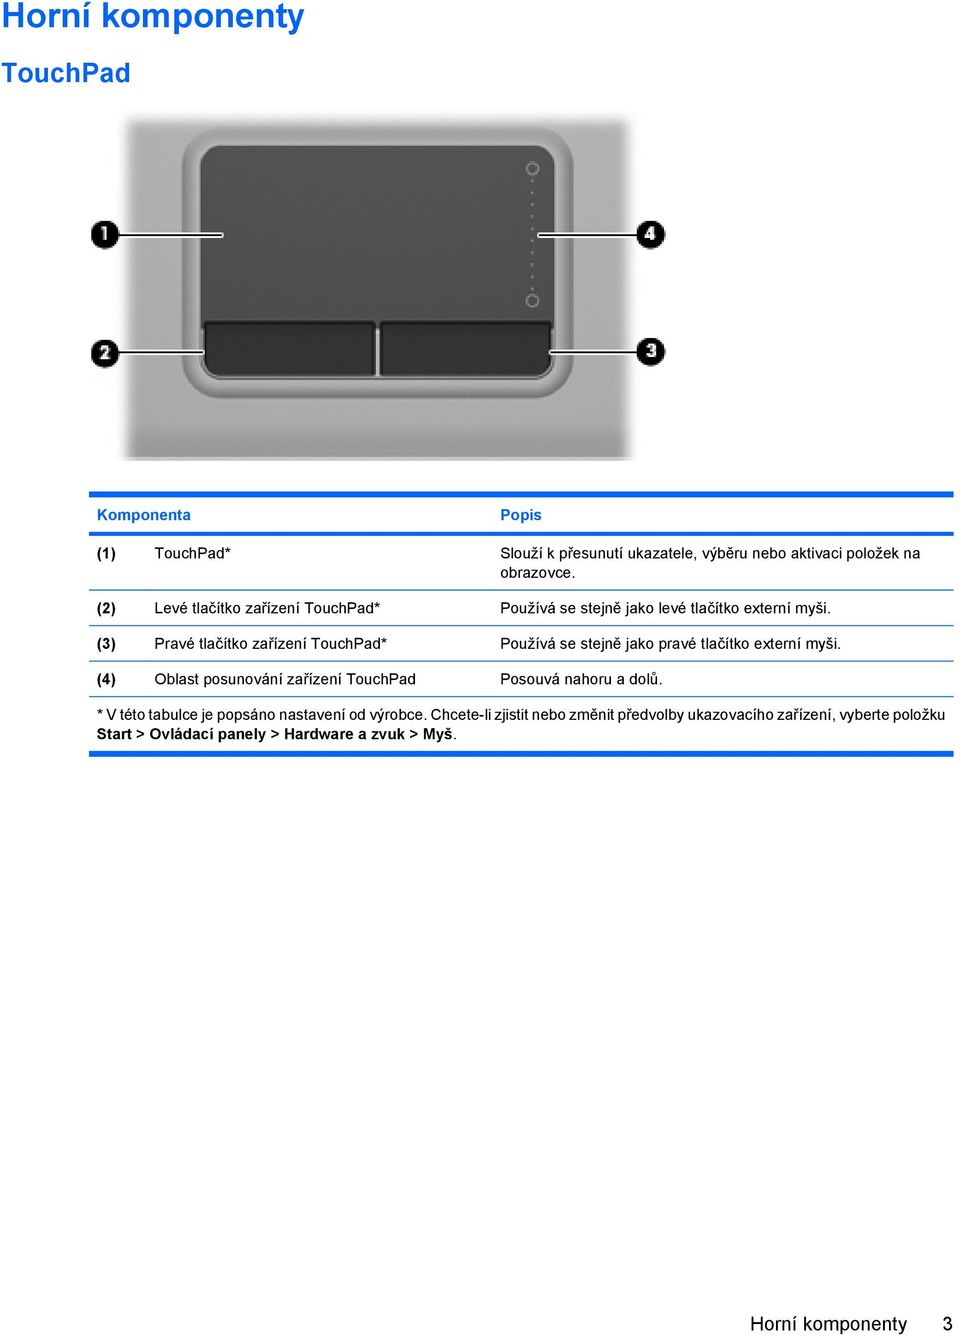 (3) Pravé tlačítko zařízení TouchPad* Používá se stejně jako pravé tlačítko externí myši.